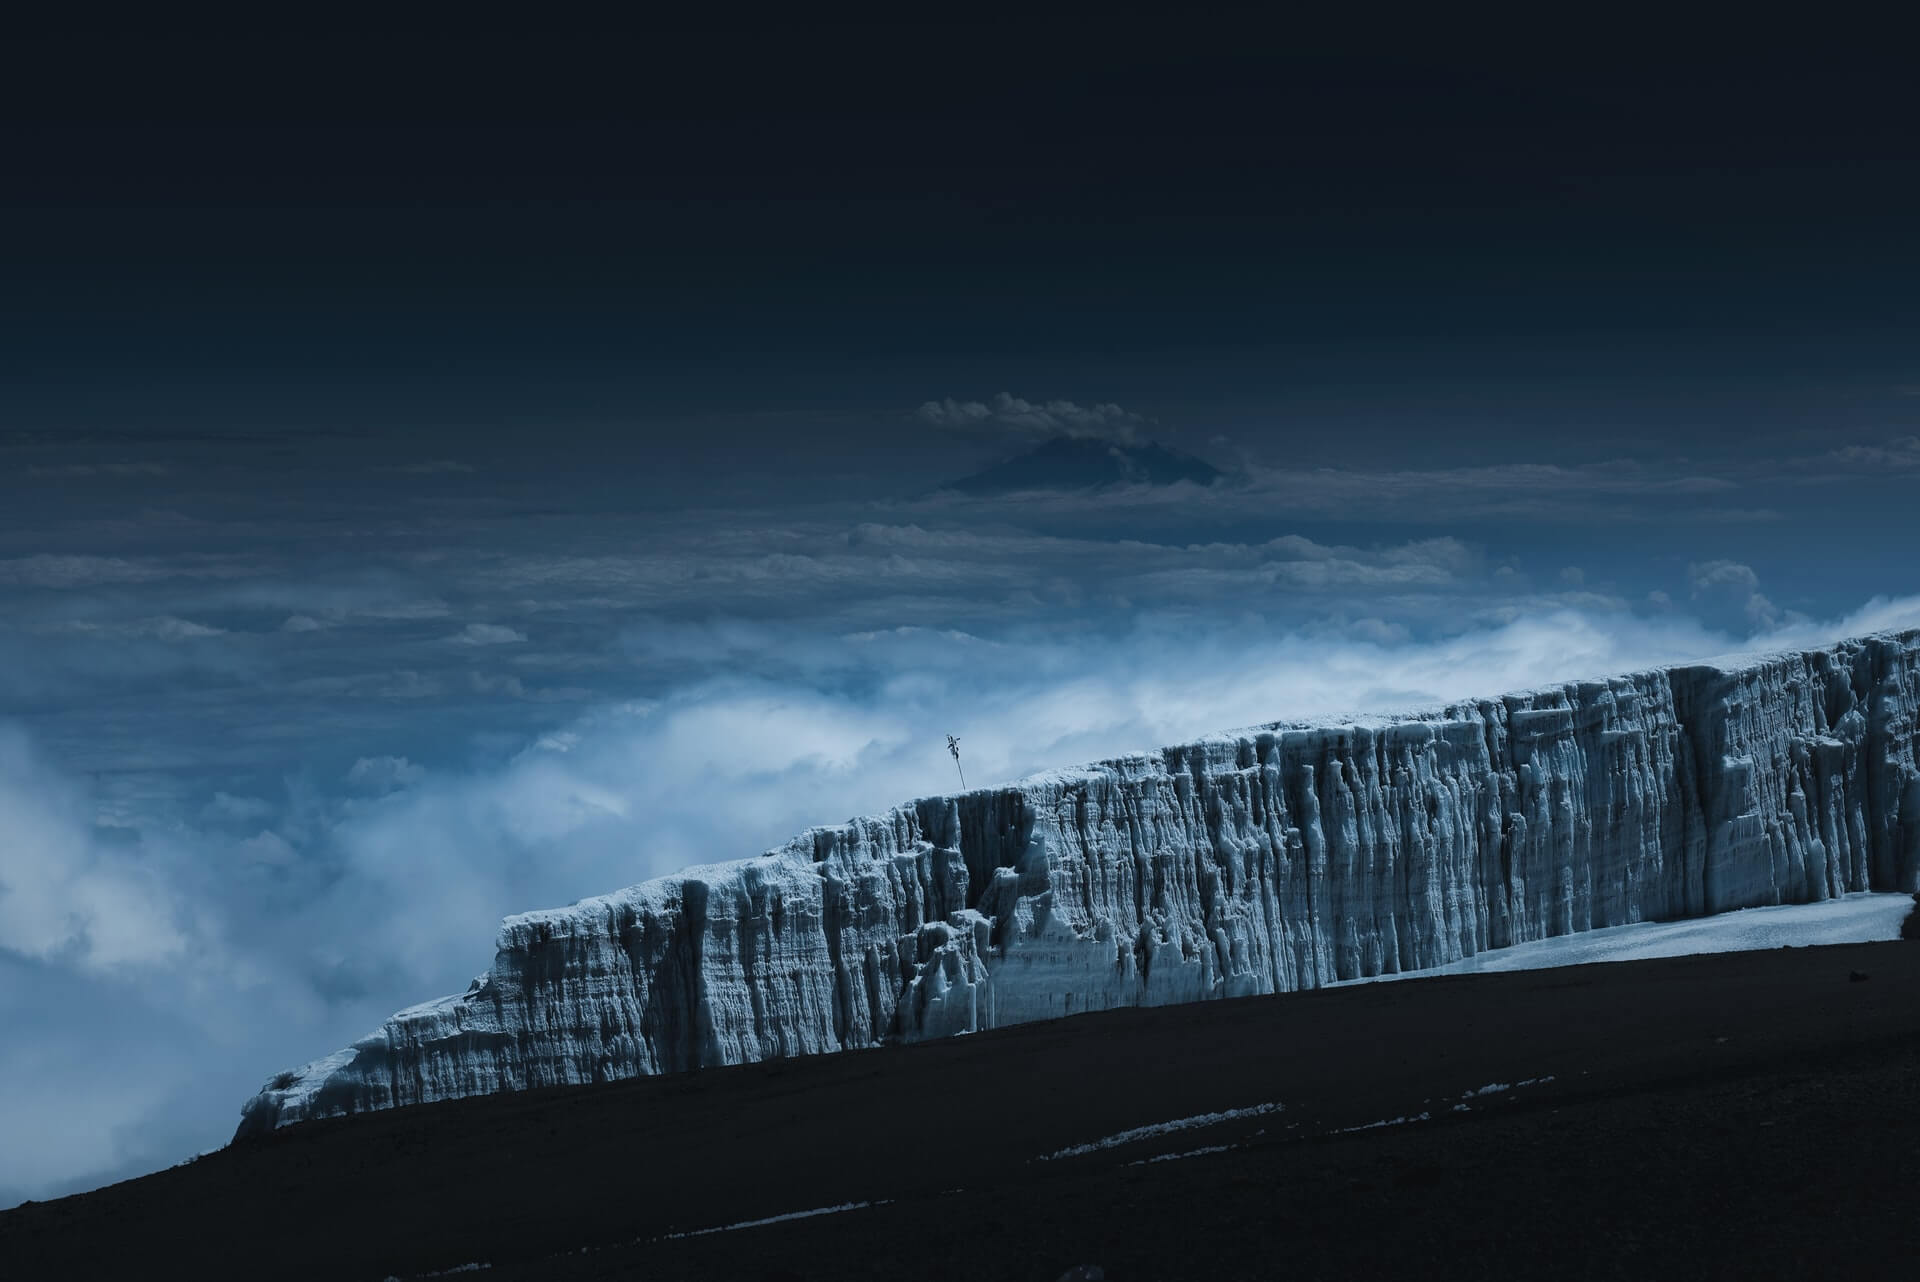 Glacier on Kilimanjaro